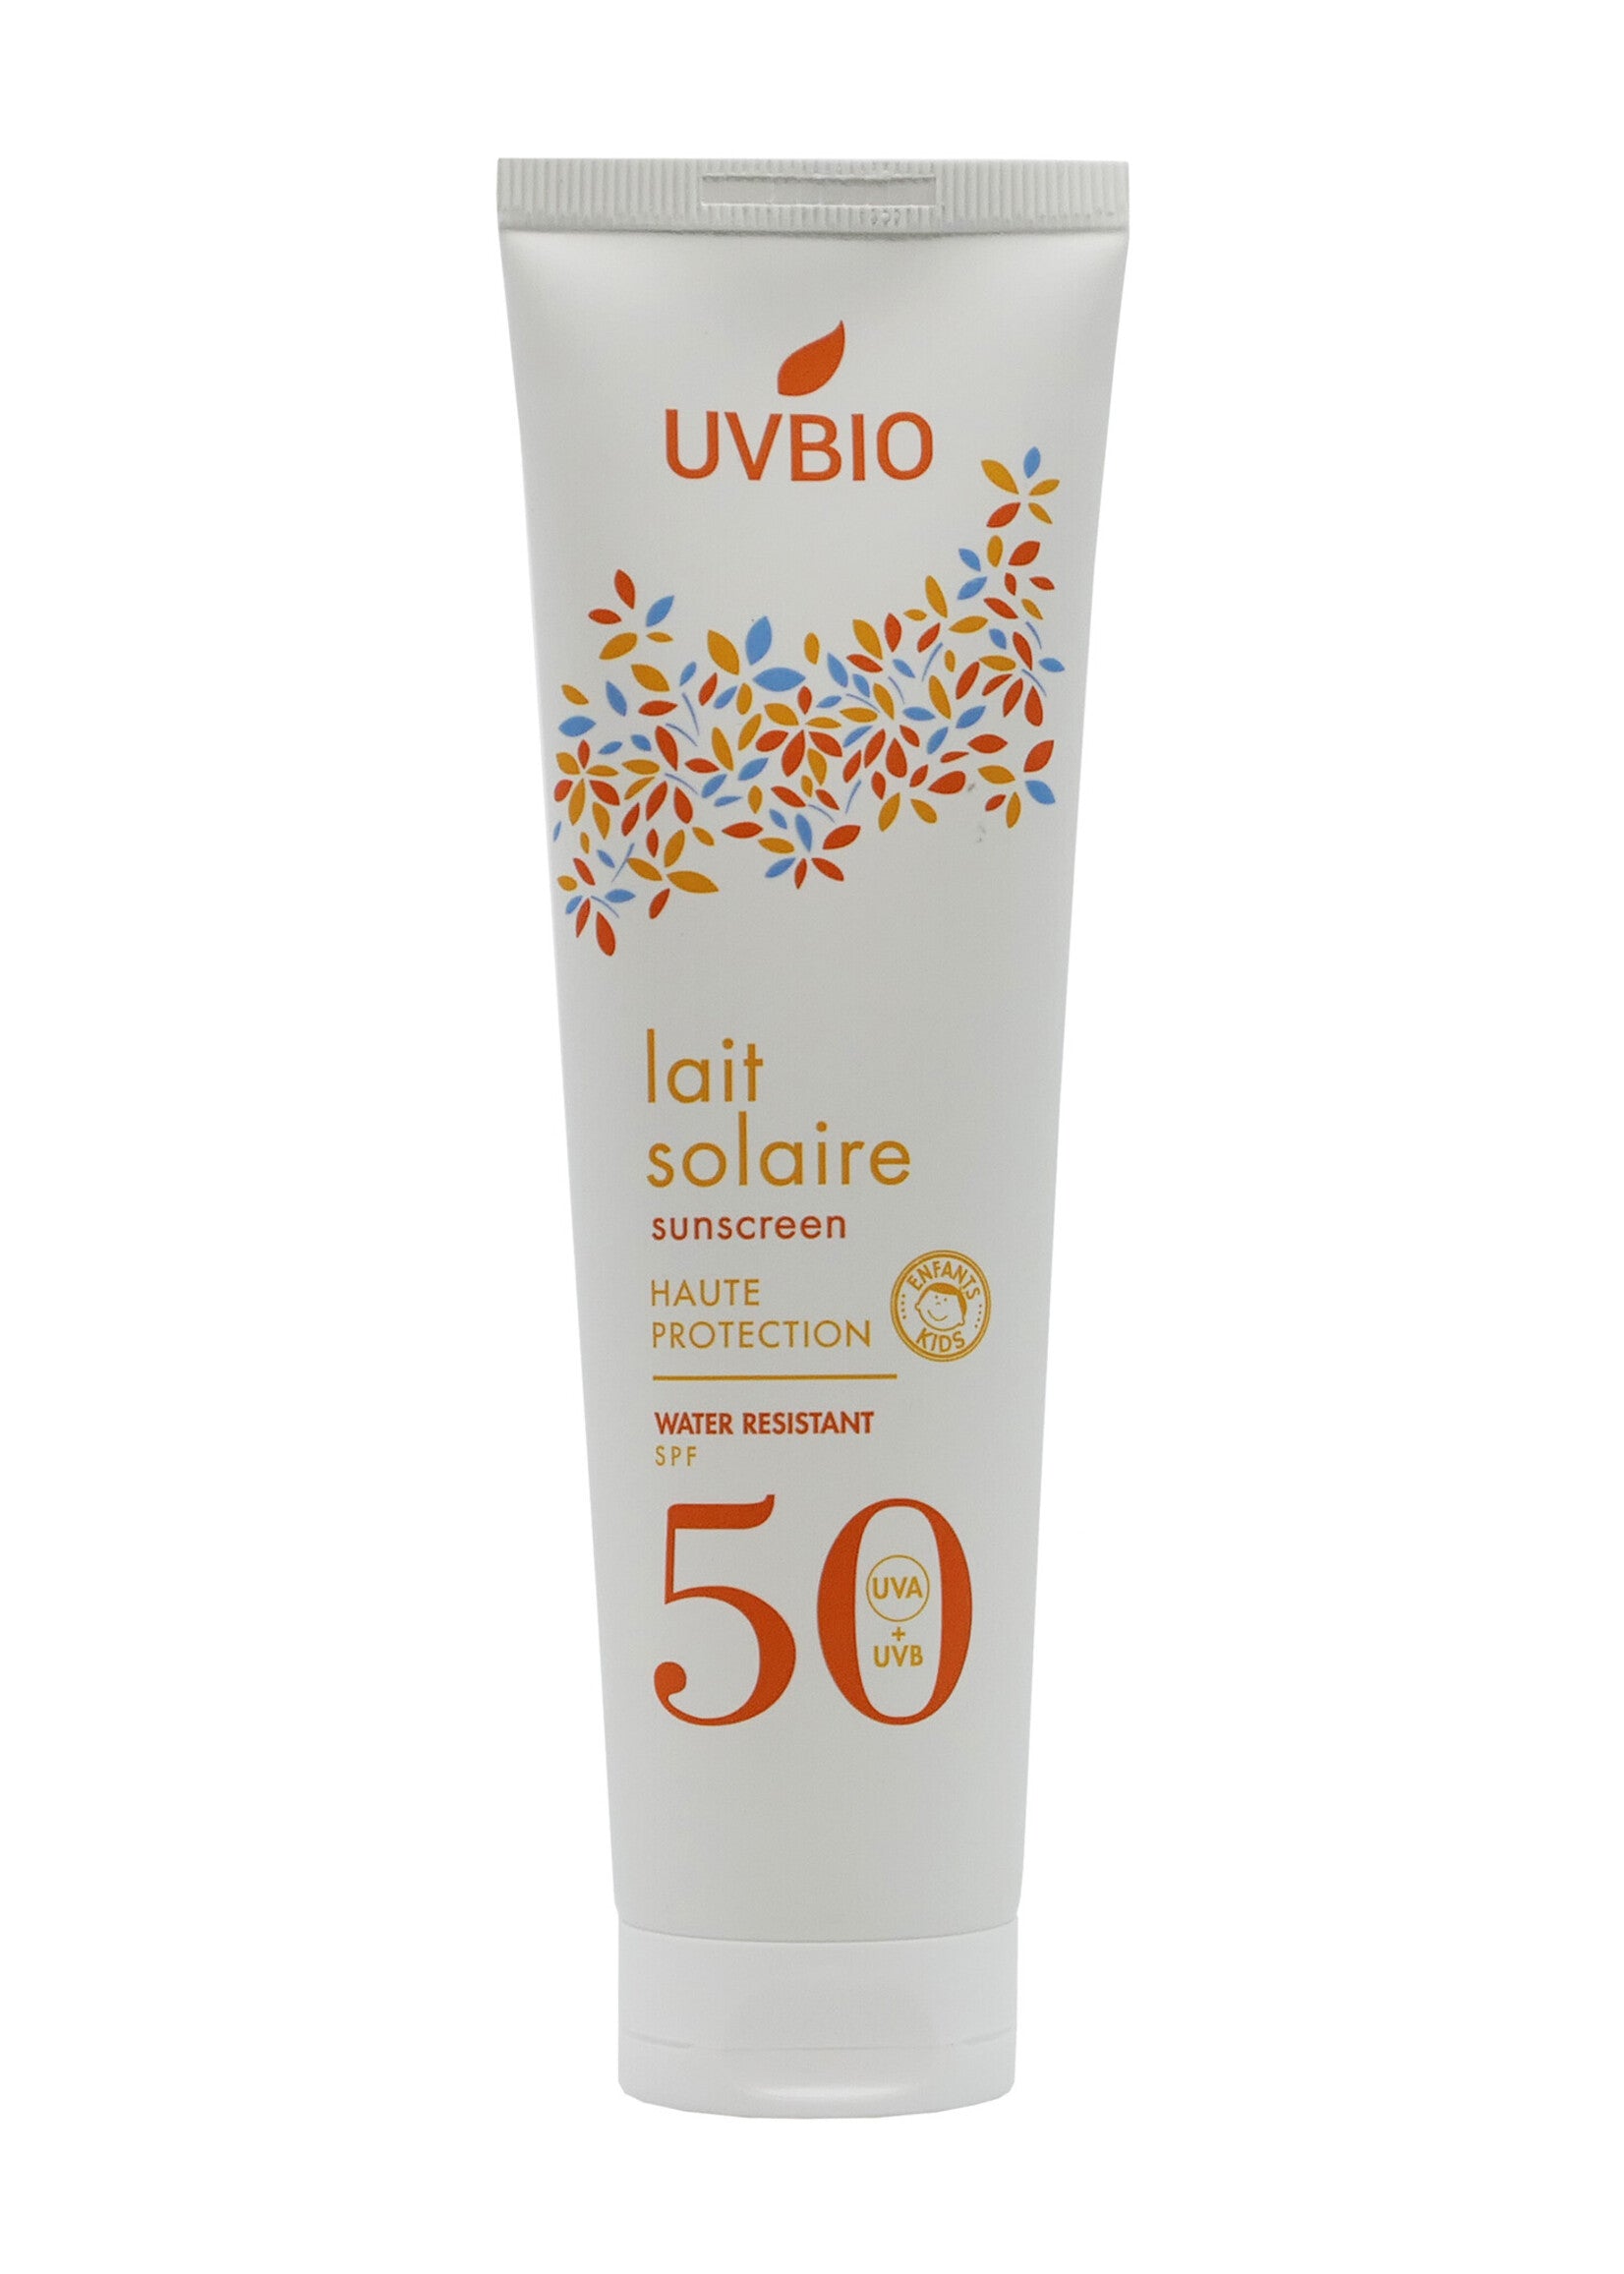 De UVBIO Biologische Zonnemelk SPF 50 met wortel-, kokosnoot- en zoete amandelolie-extracten biedt een hoge natuurlijke bescherming tegen UVA- en UVB-stralen. 